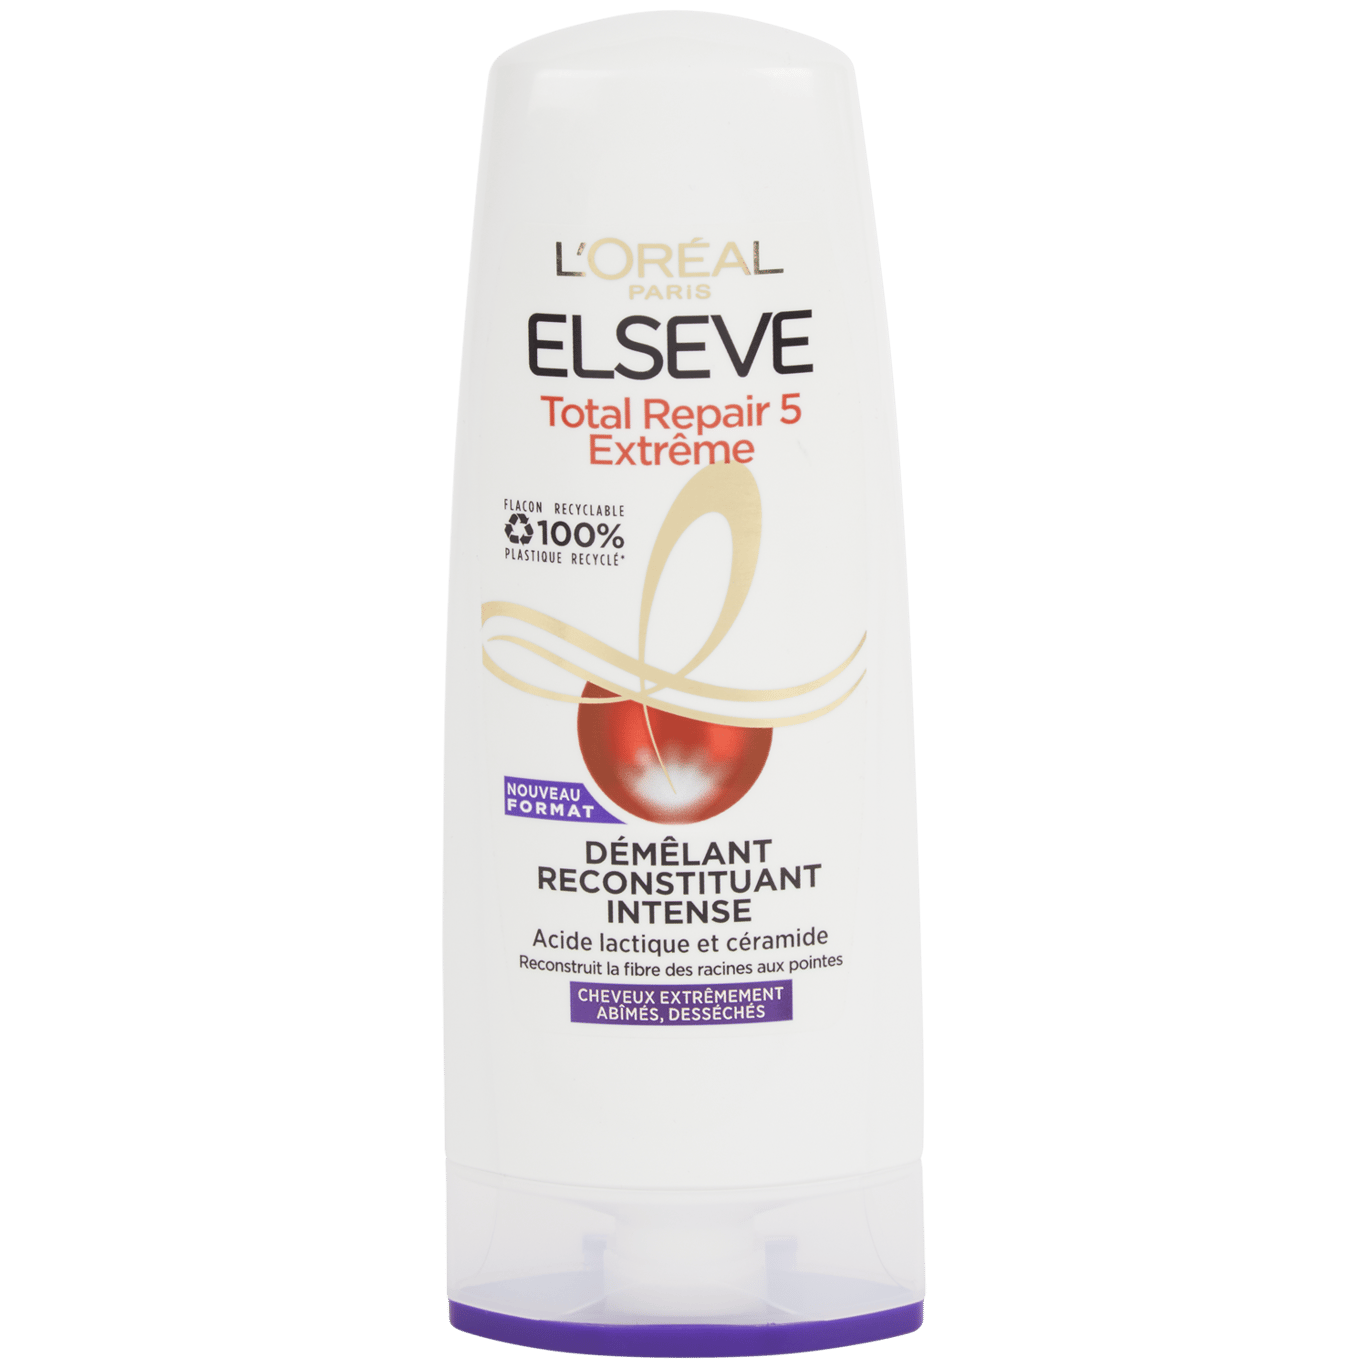 Après-shampoing L'Oréal Elseve Total Repair 5 Extreme